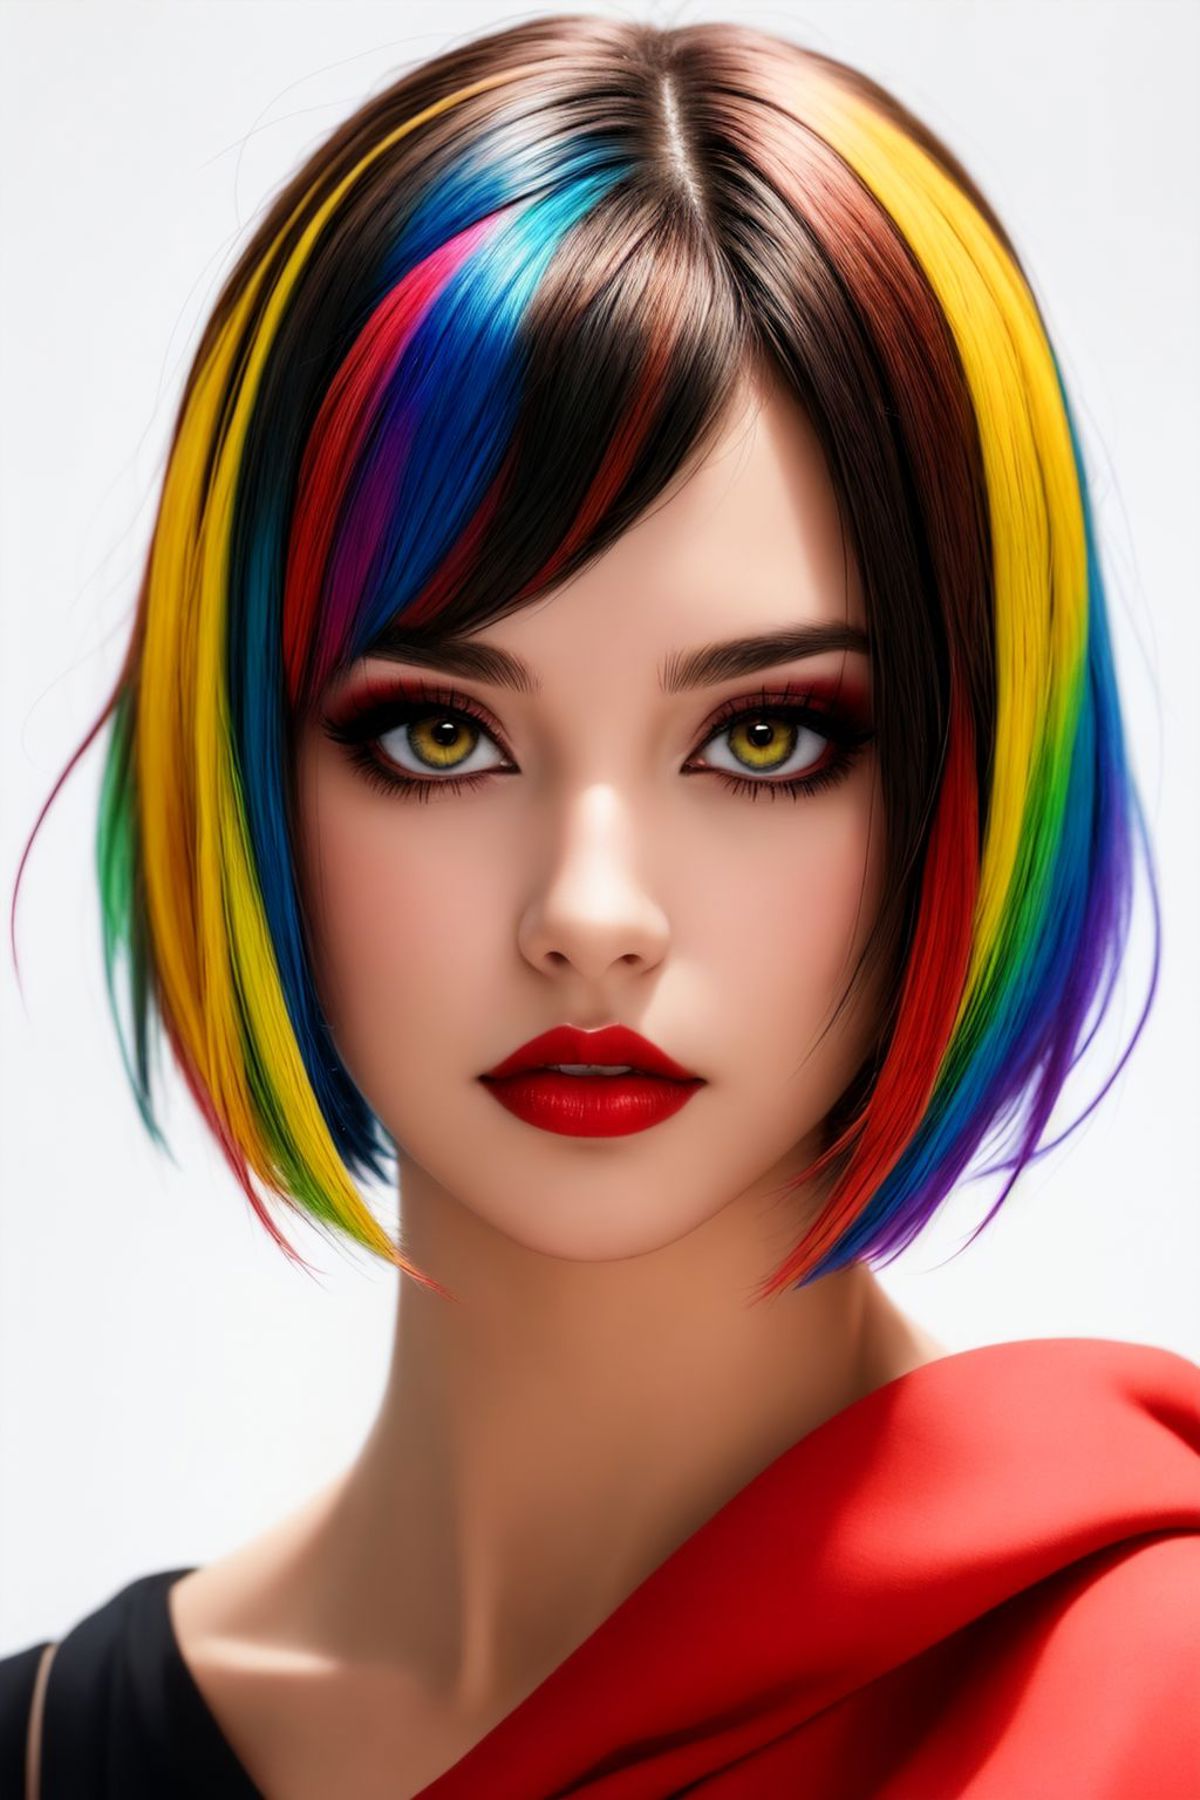 BeautyFool SemiReal image by 53rt5355iz